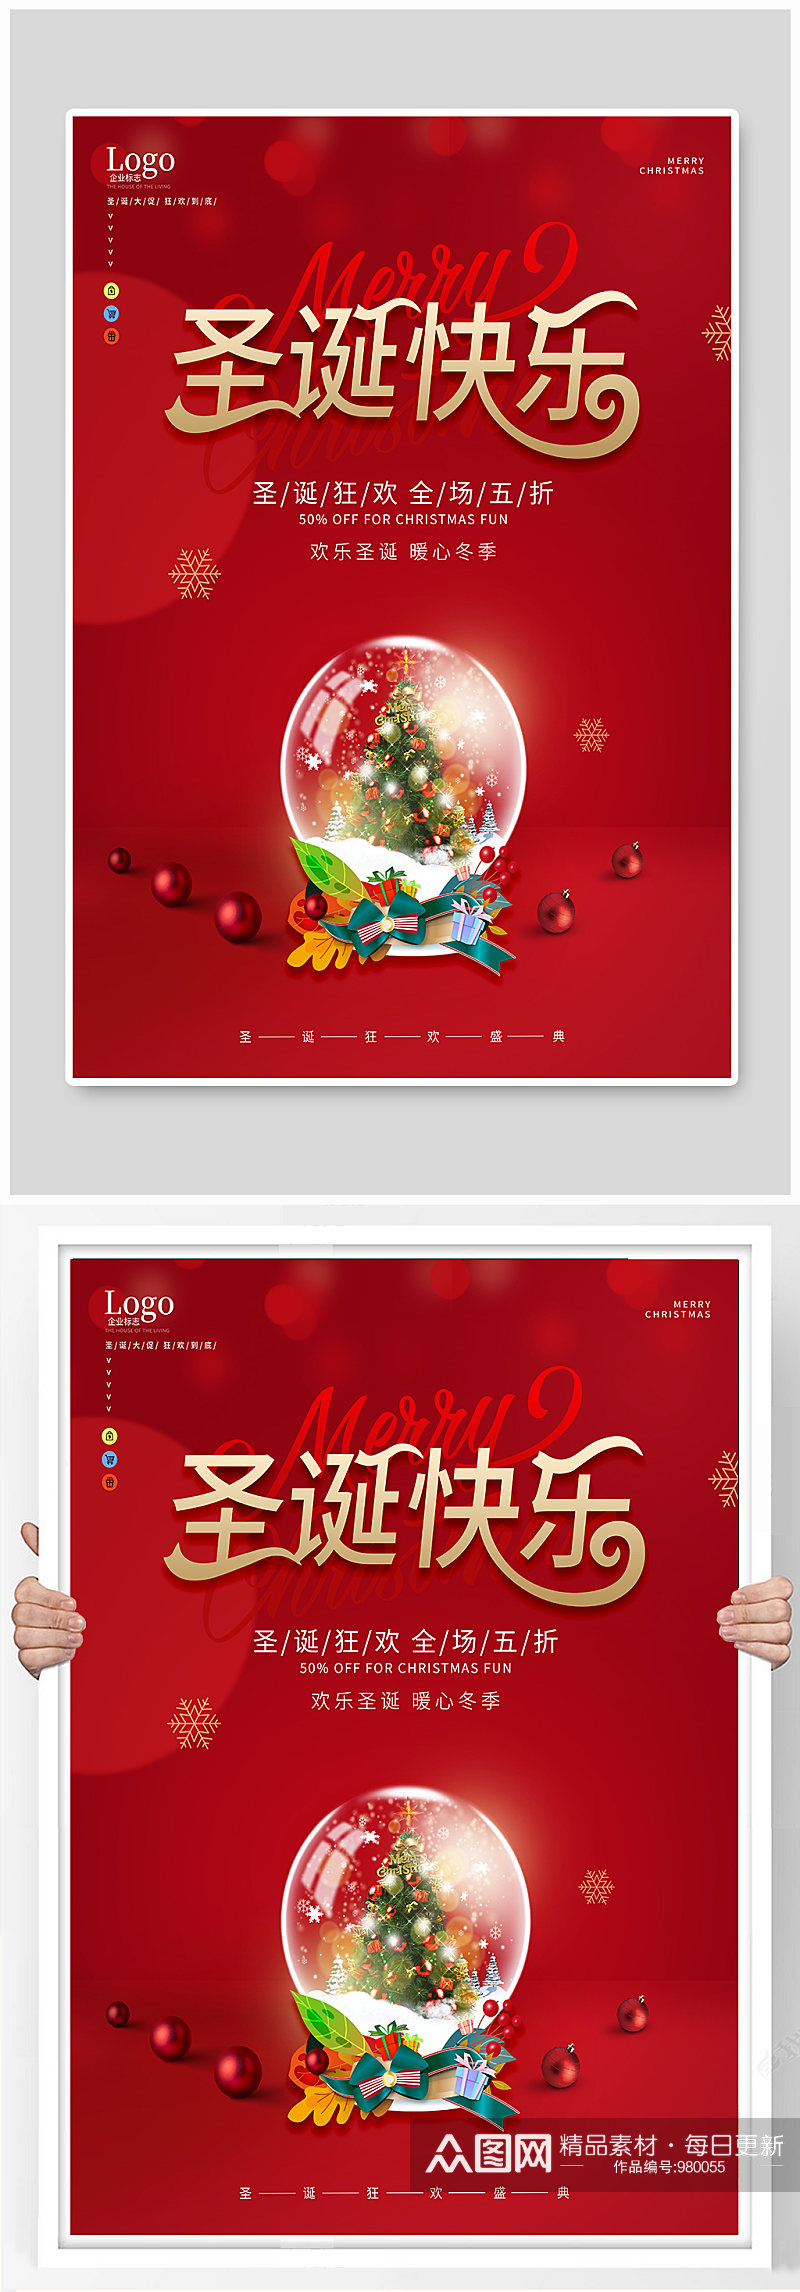 红色创意圣诞节快乐水晶球冬季海报素材